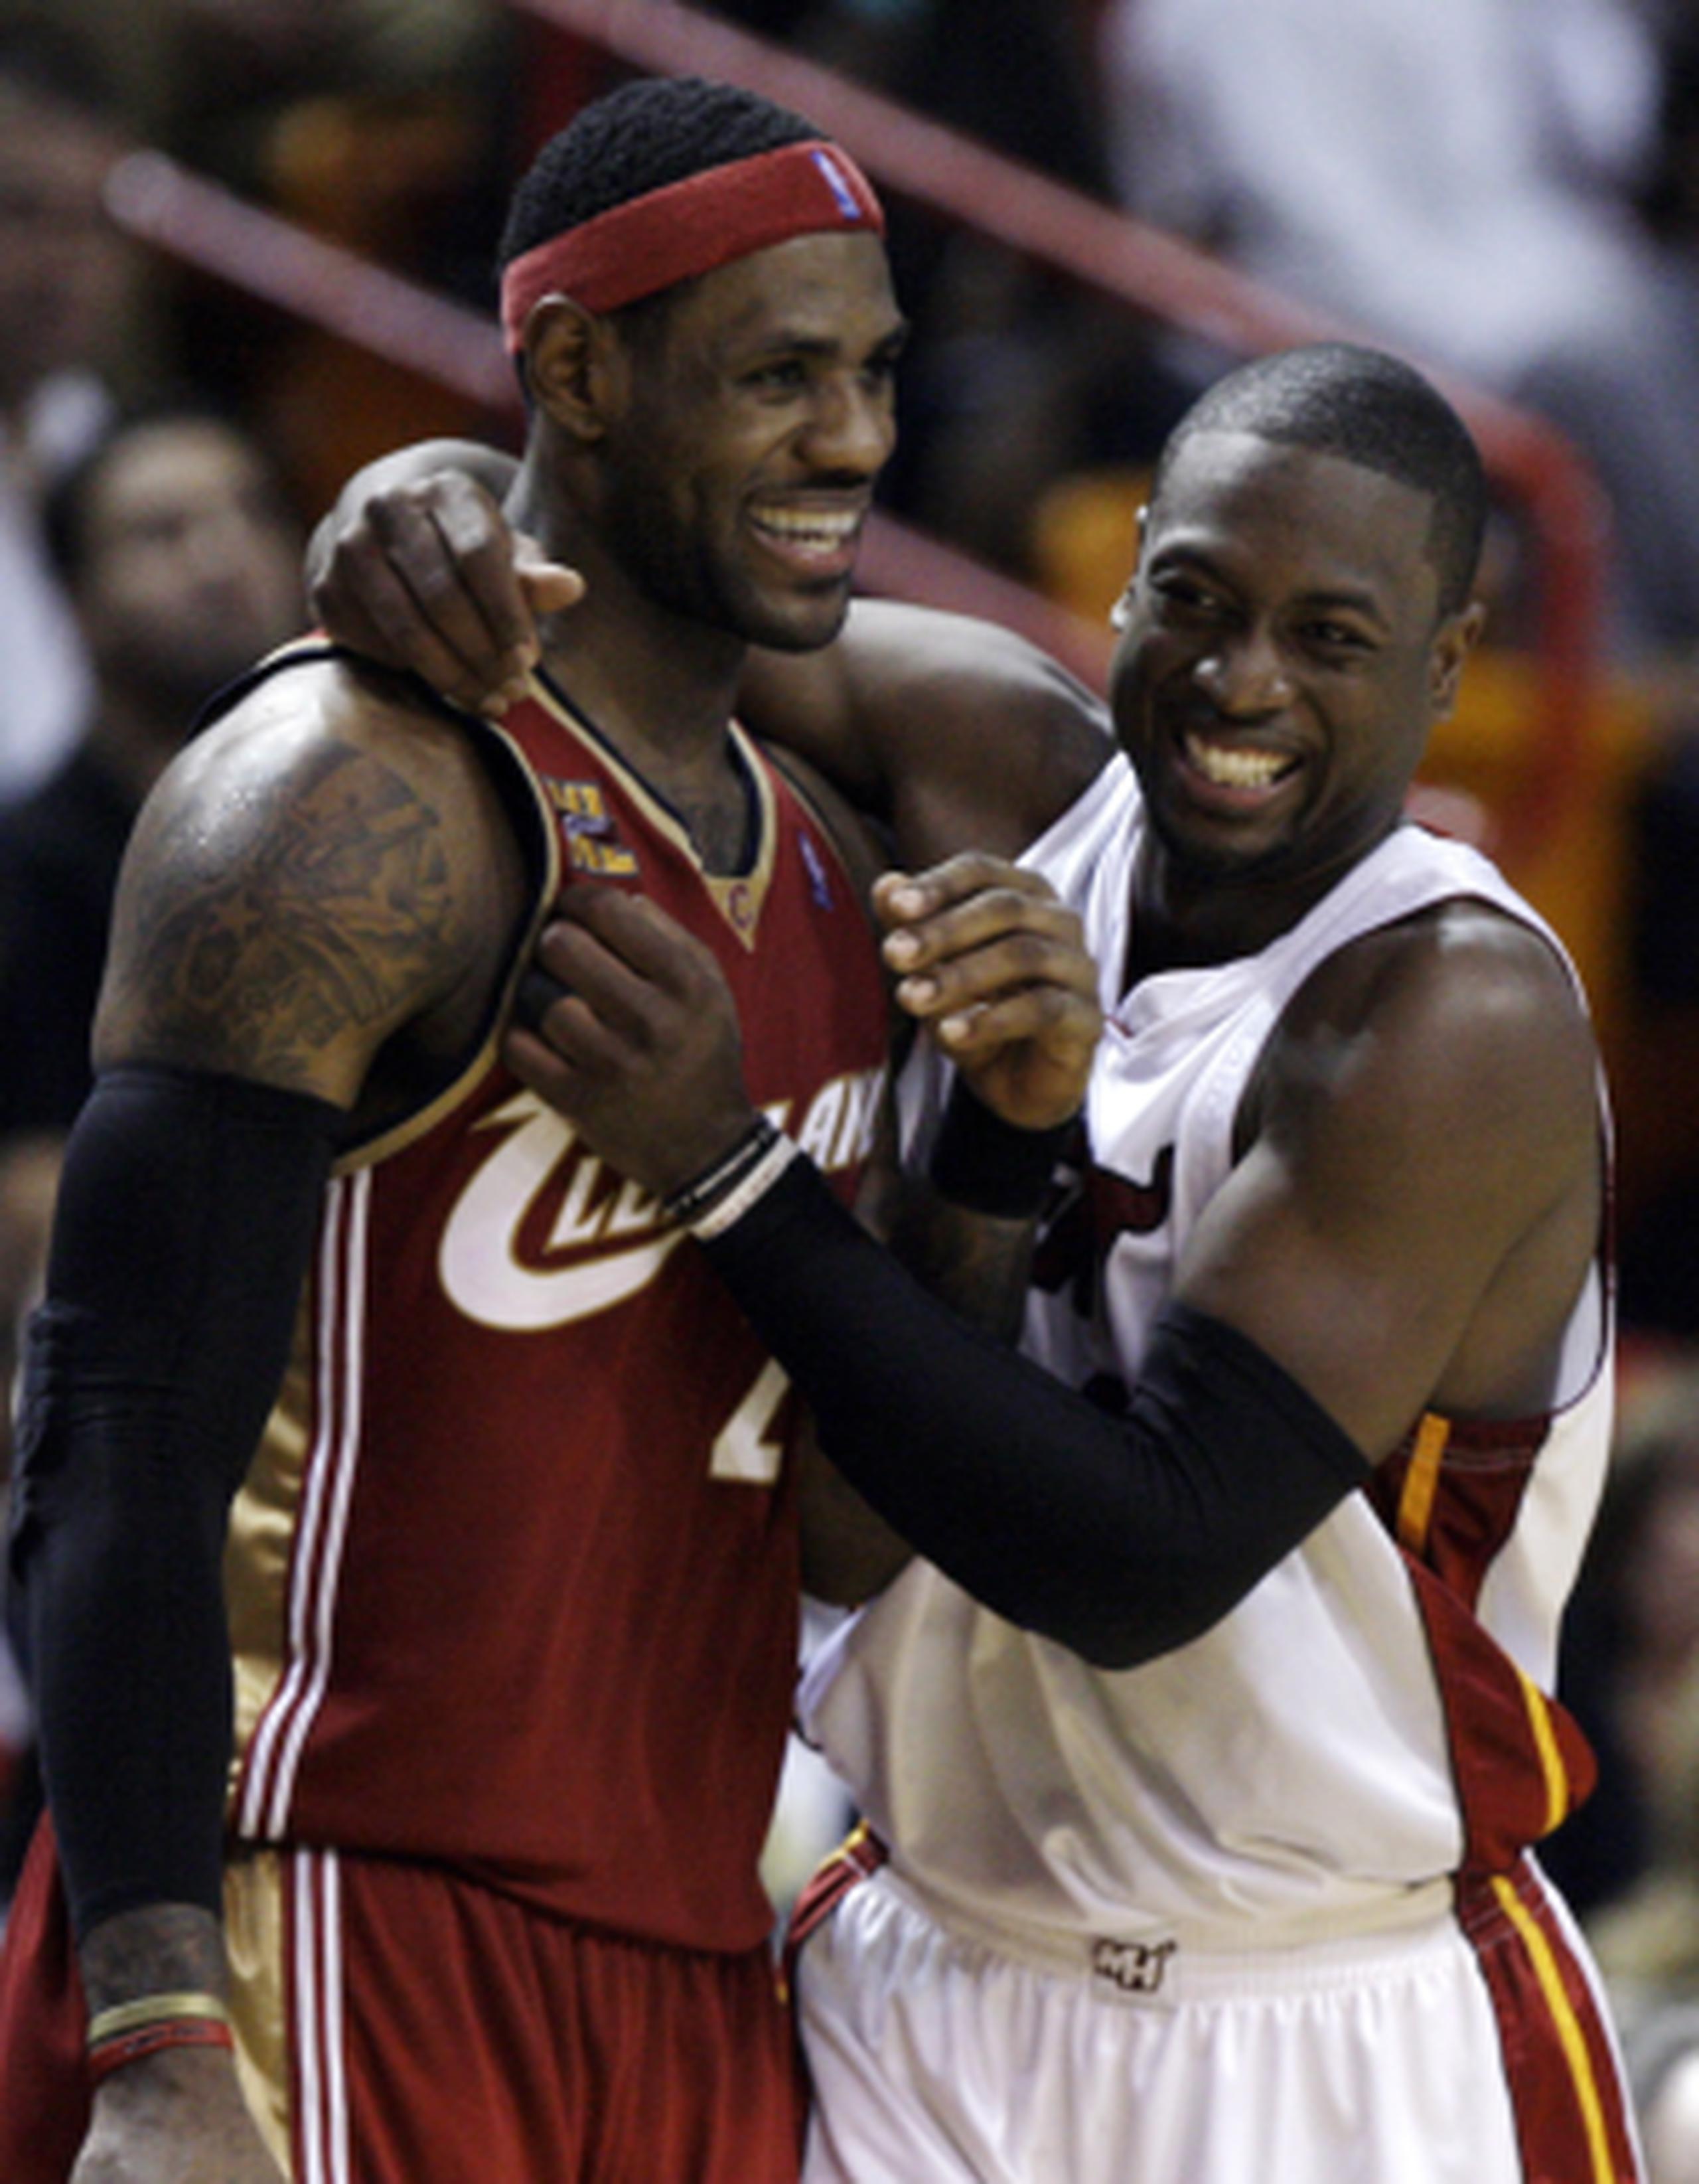 Luego de cuatro temporadas como compañeros de equipos, LeBron James y Dwyane Wade volverán a ser rivales en la cancha. (Archivo/AP)